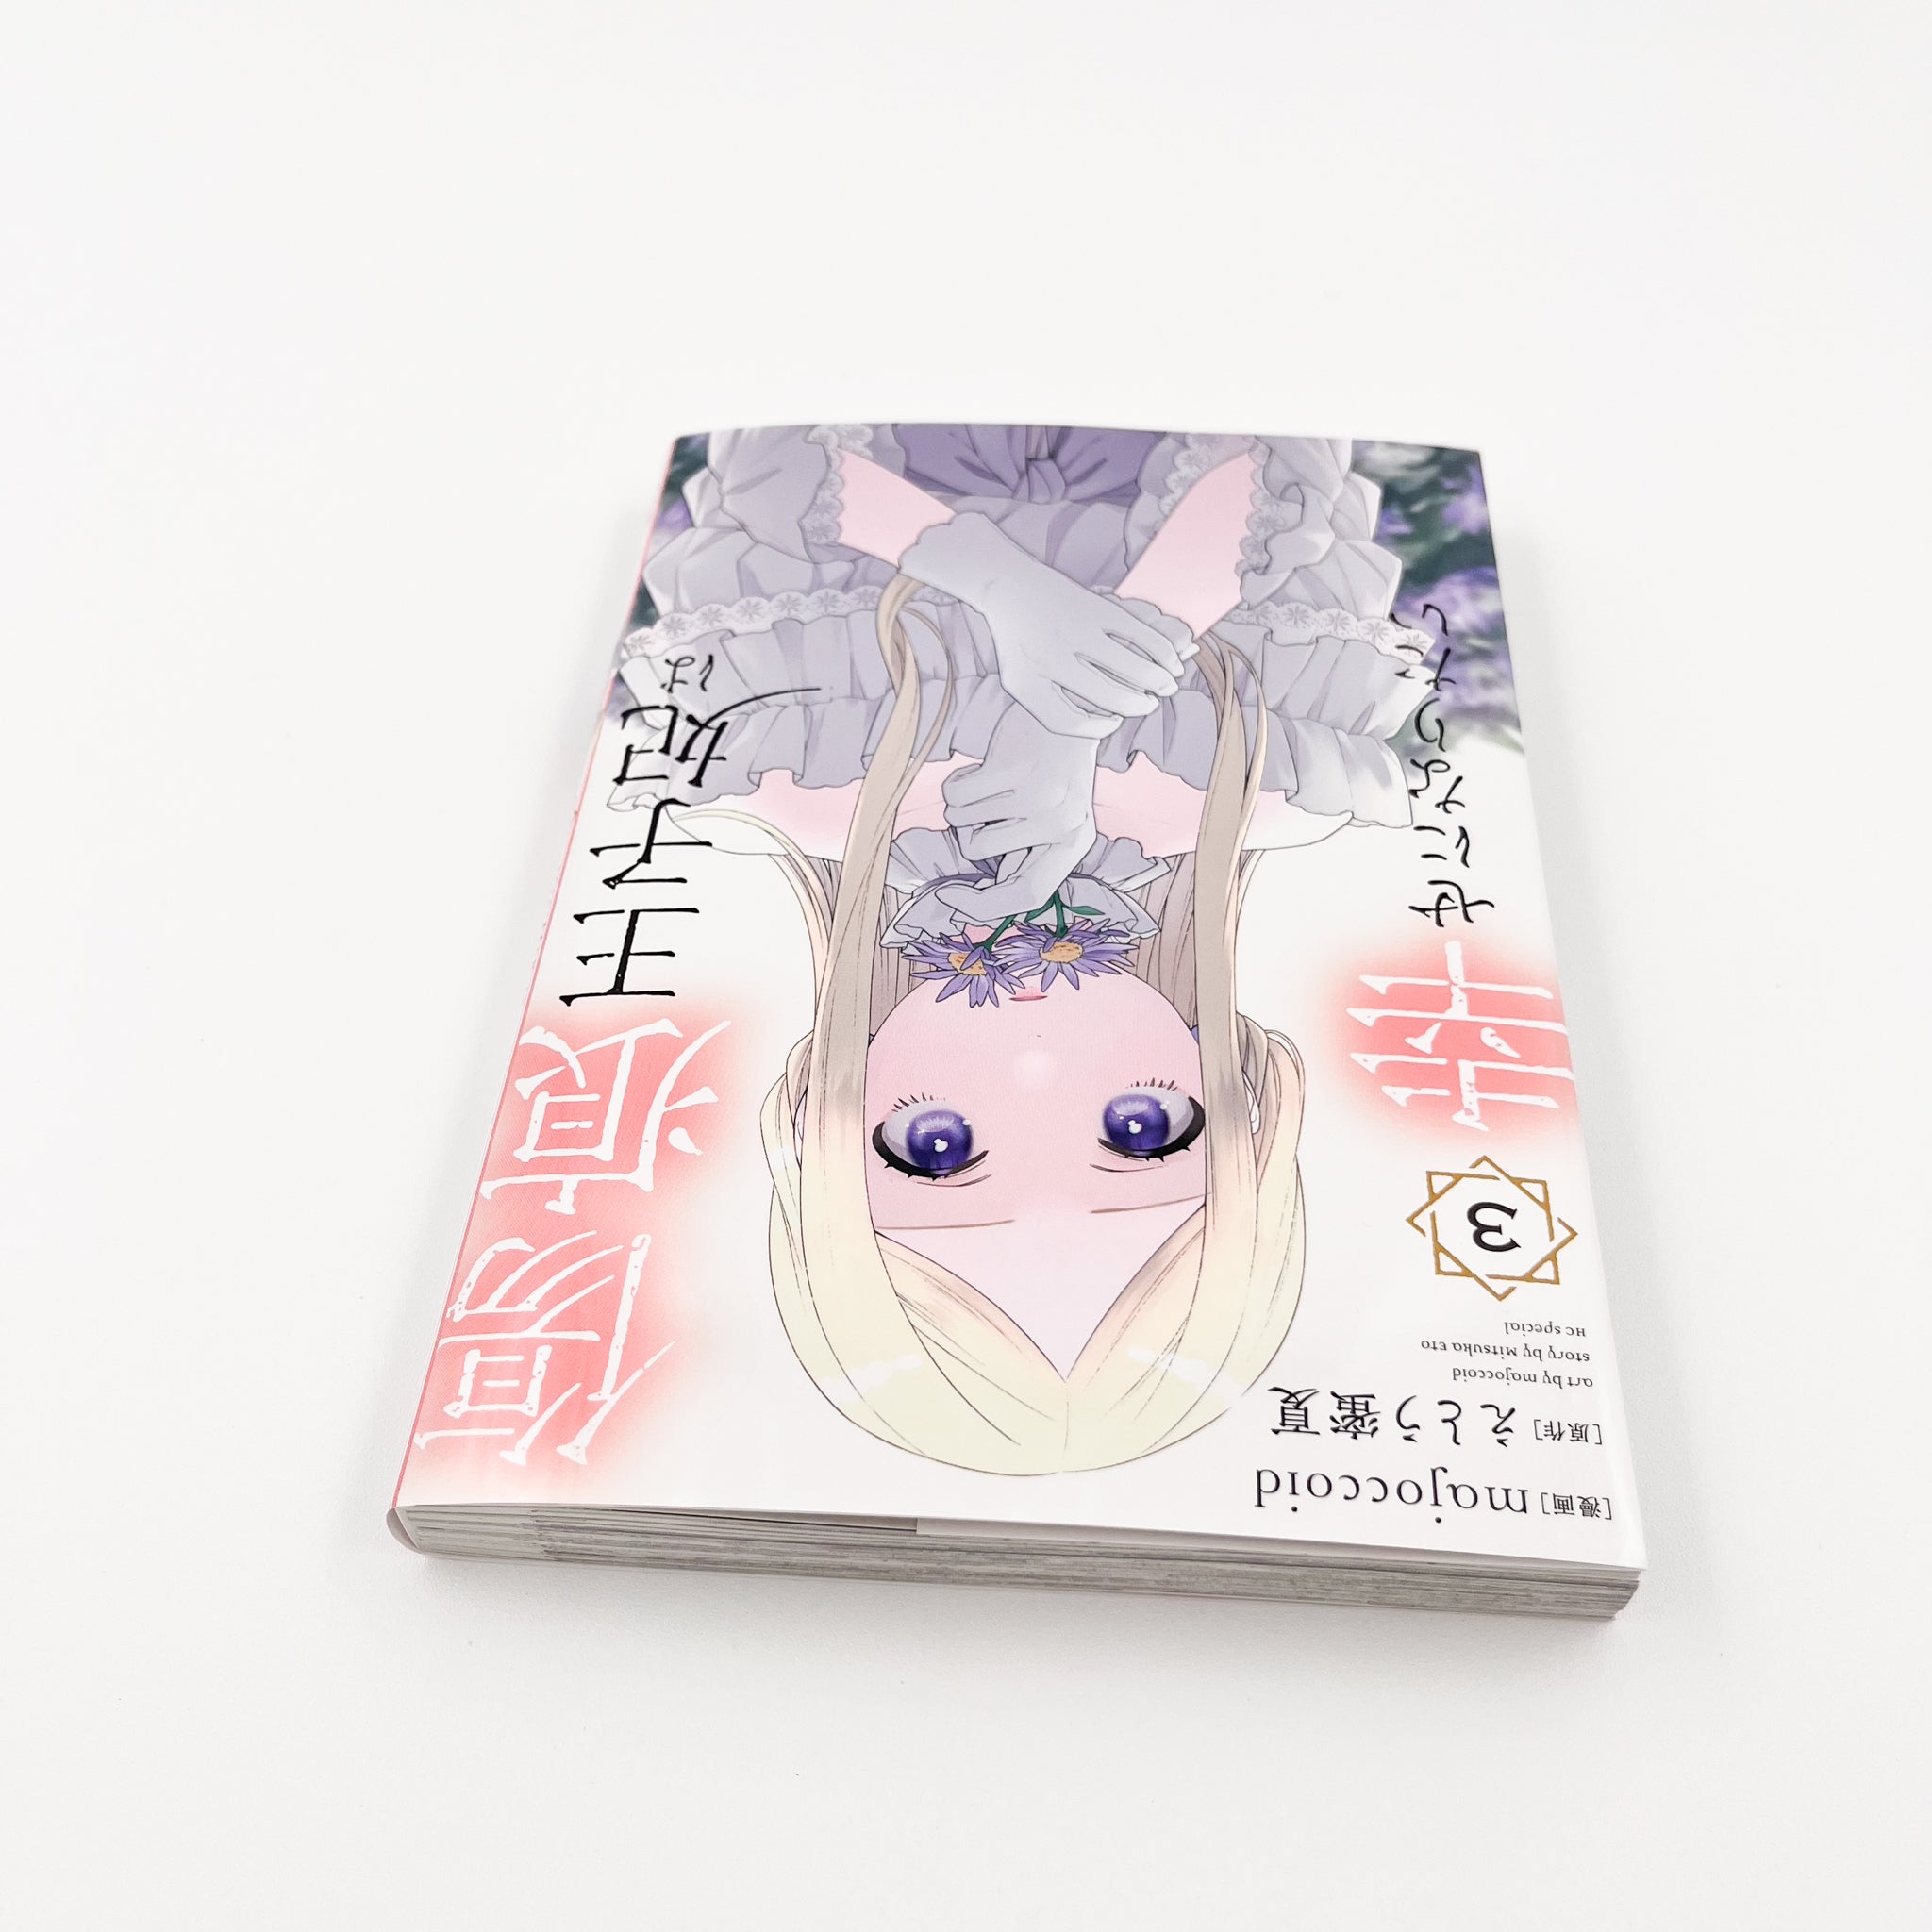 Kizuato Ouji Hi wa Shiawase ni naritai volume 3 side view